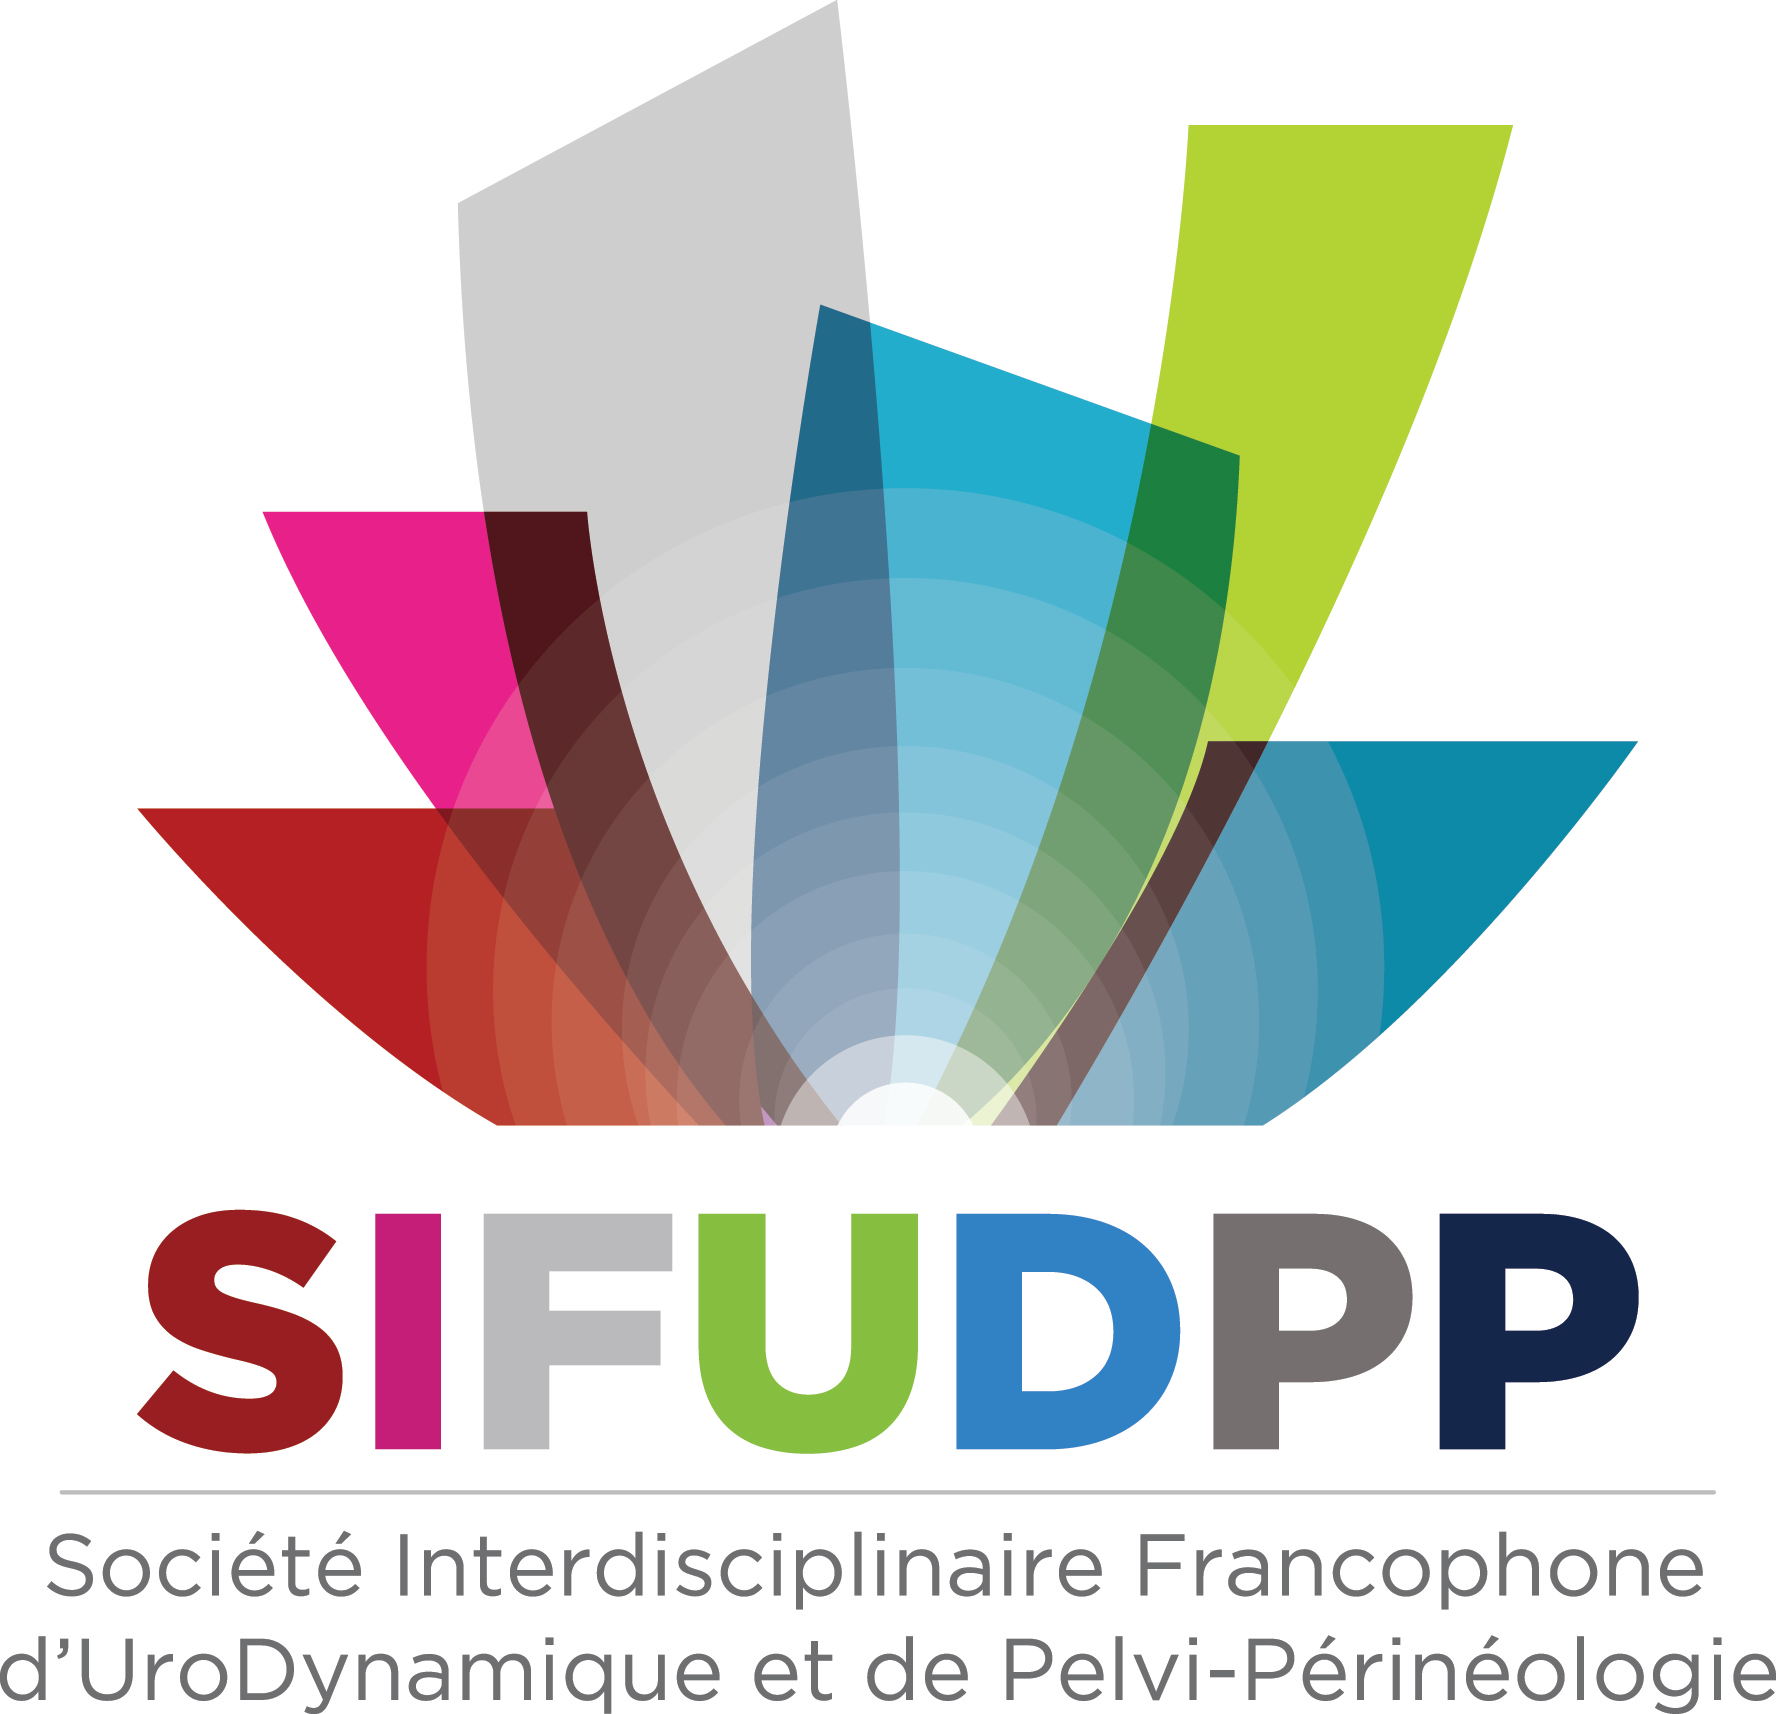 SIFUD-PP Paris 2016 : Y-a-t-il une technique à privilégier chez l’obèse